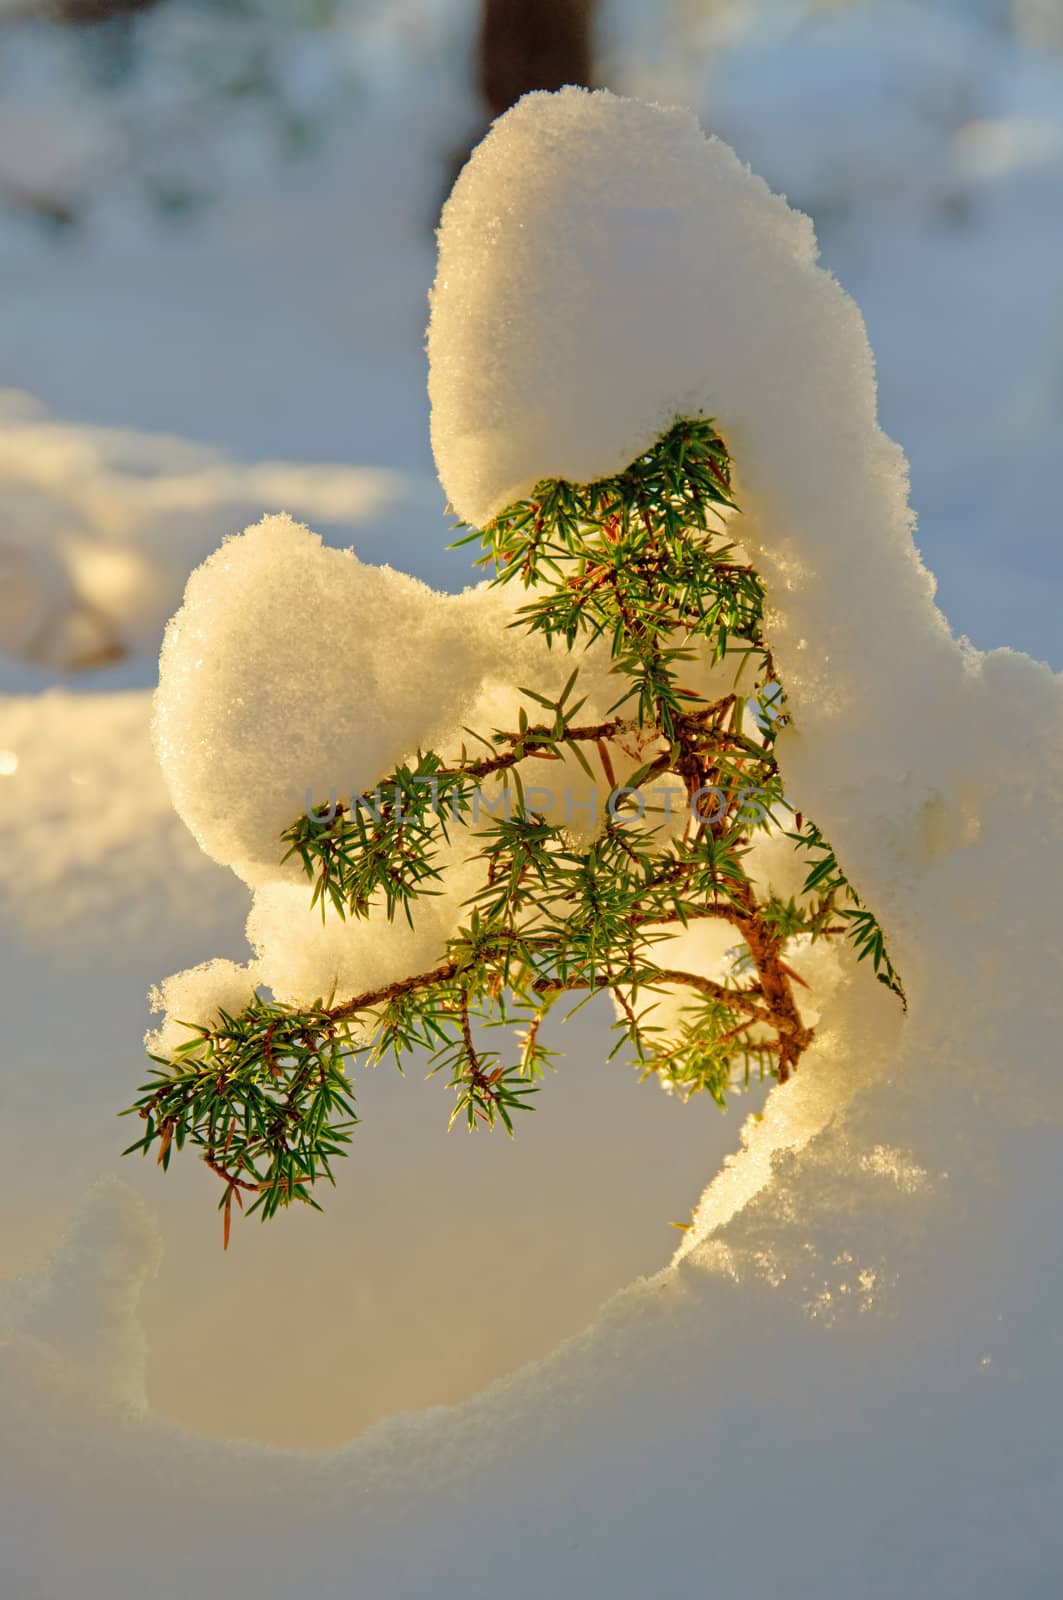 Heavy snow on a small tree